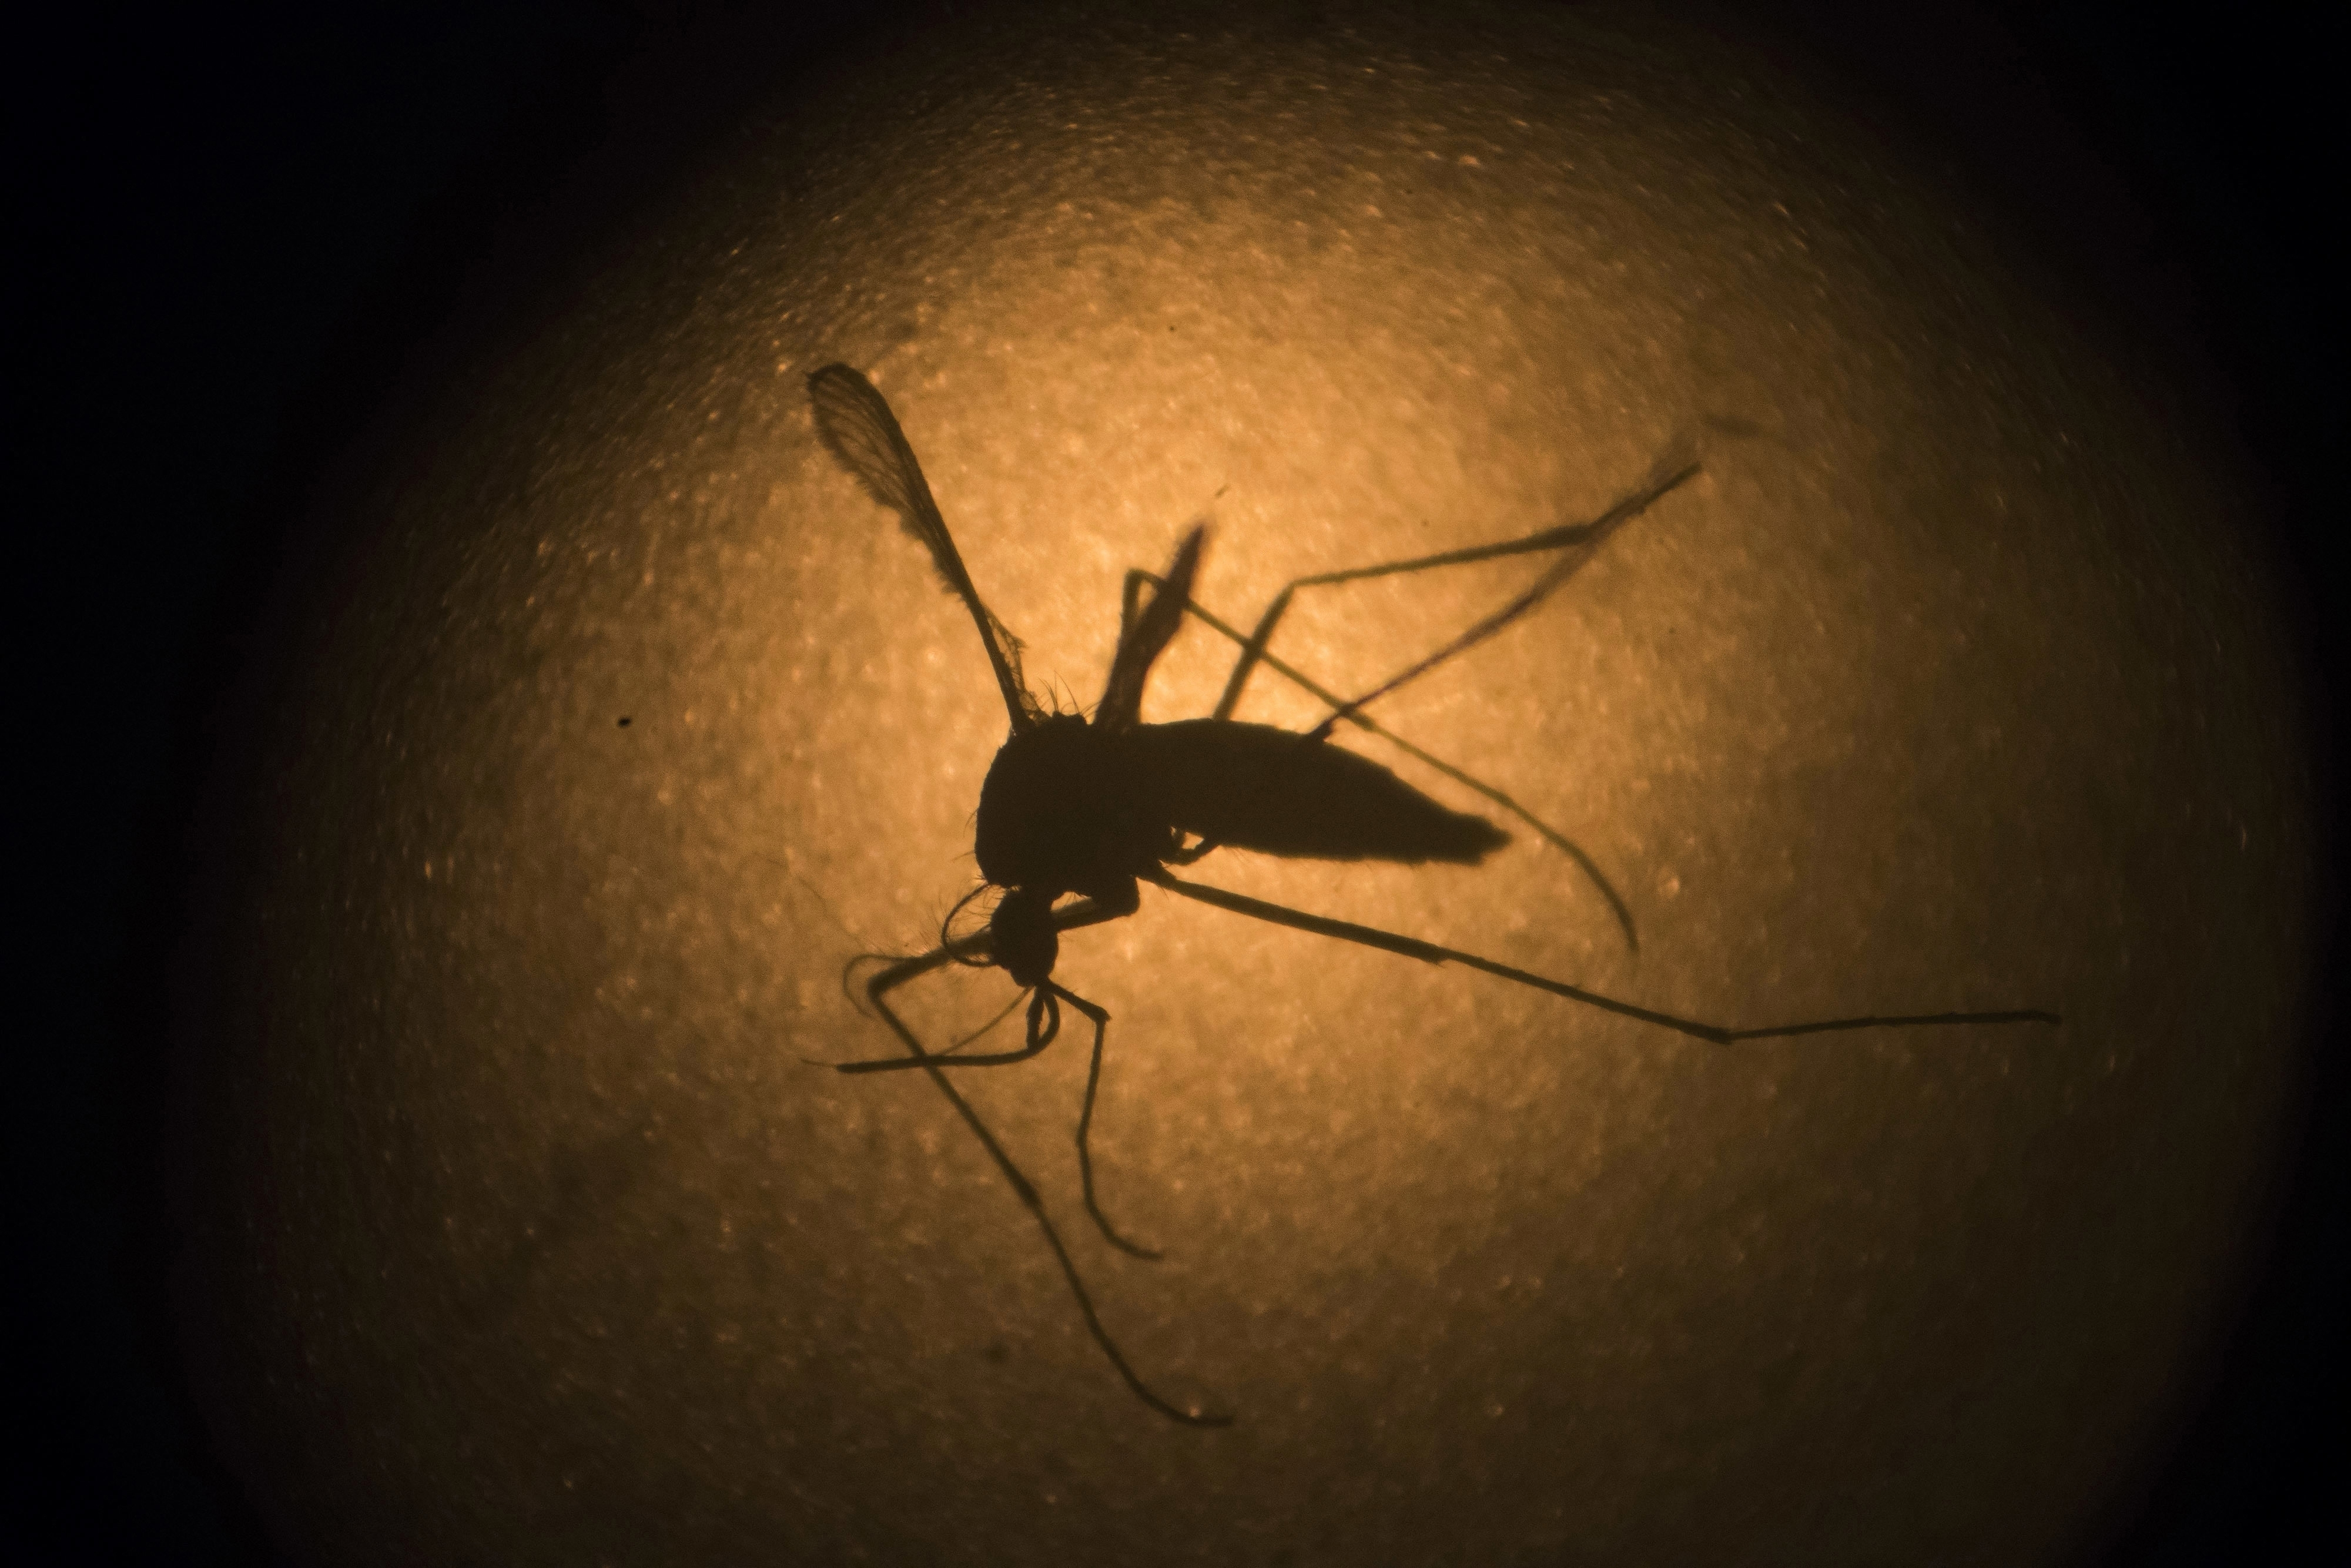 Capivari confirma morte de criança de 10 anos vítima de dengue; região atinge 13 óbitos pela doença